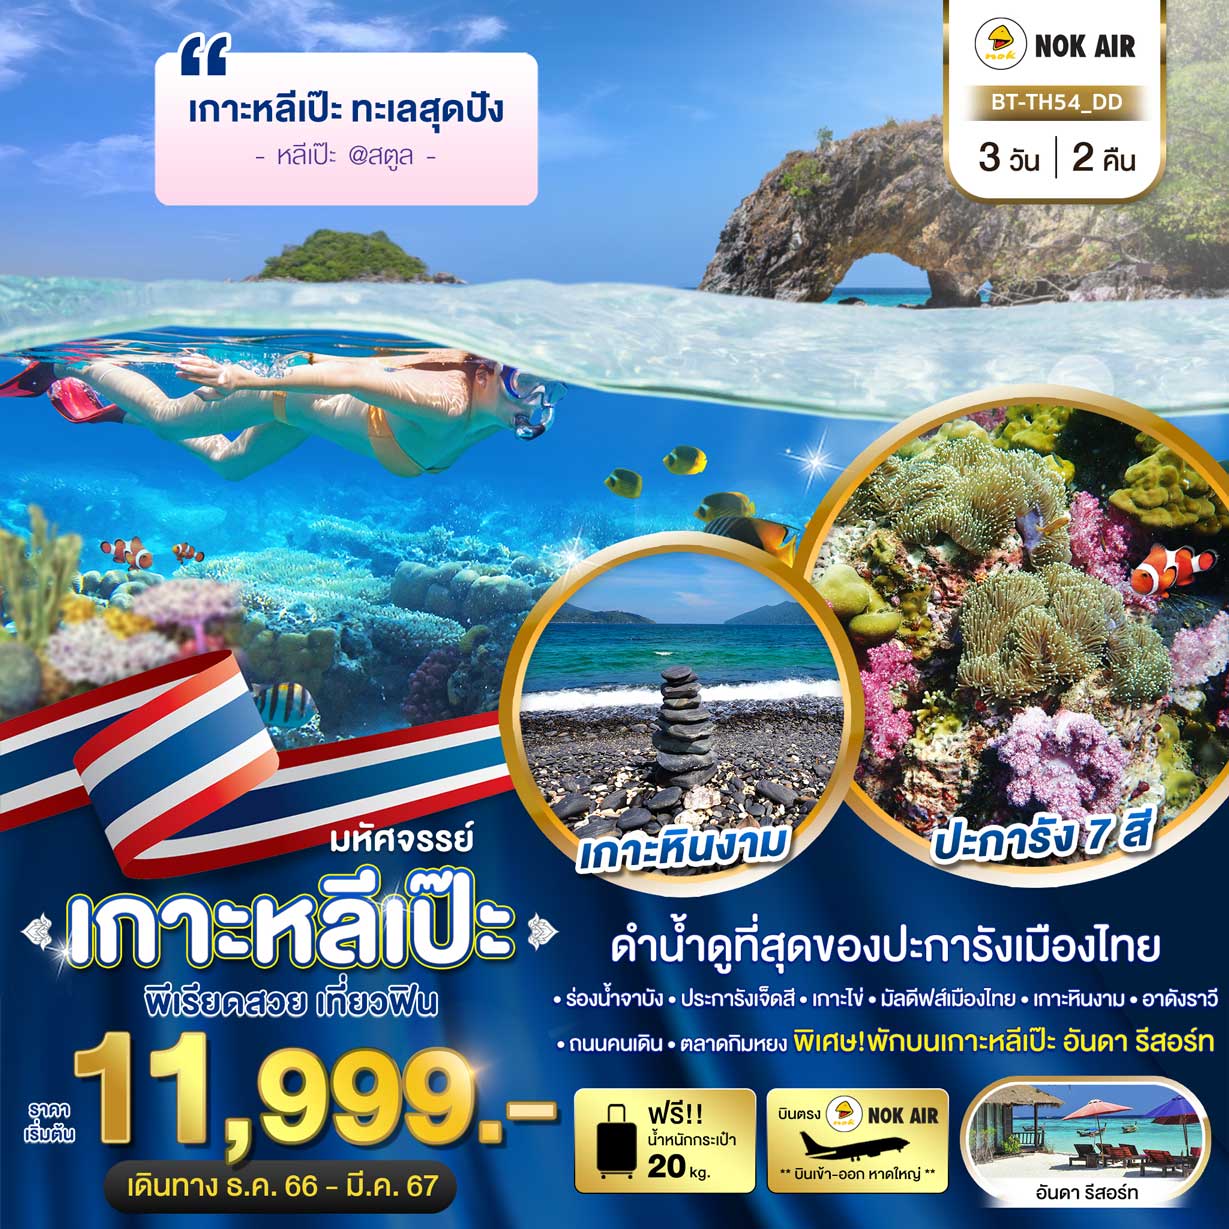 ทัวร์สตูล เกาะหลีเป๊ะ ทะเลสุดปัง ดำน้ำดูที่สุดของประการังเมืองไทย 3วัน 2คืน